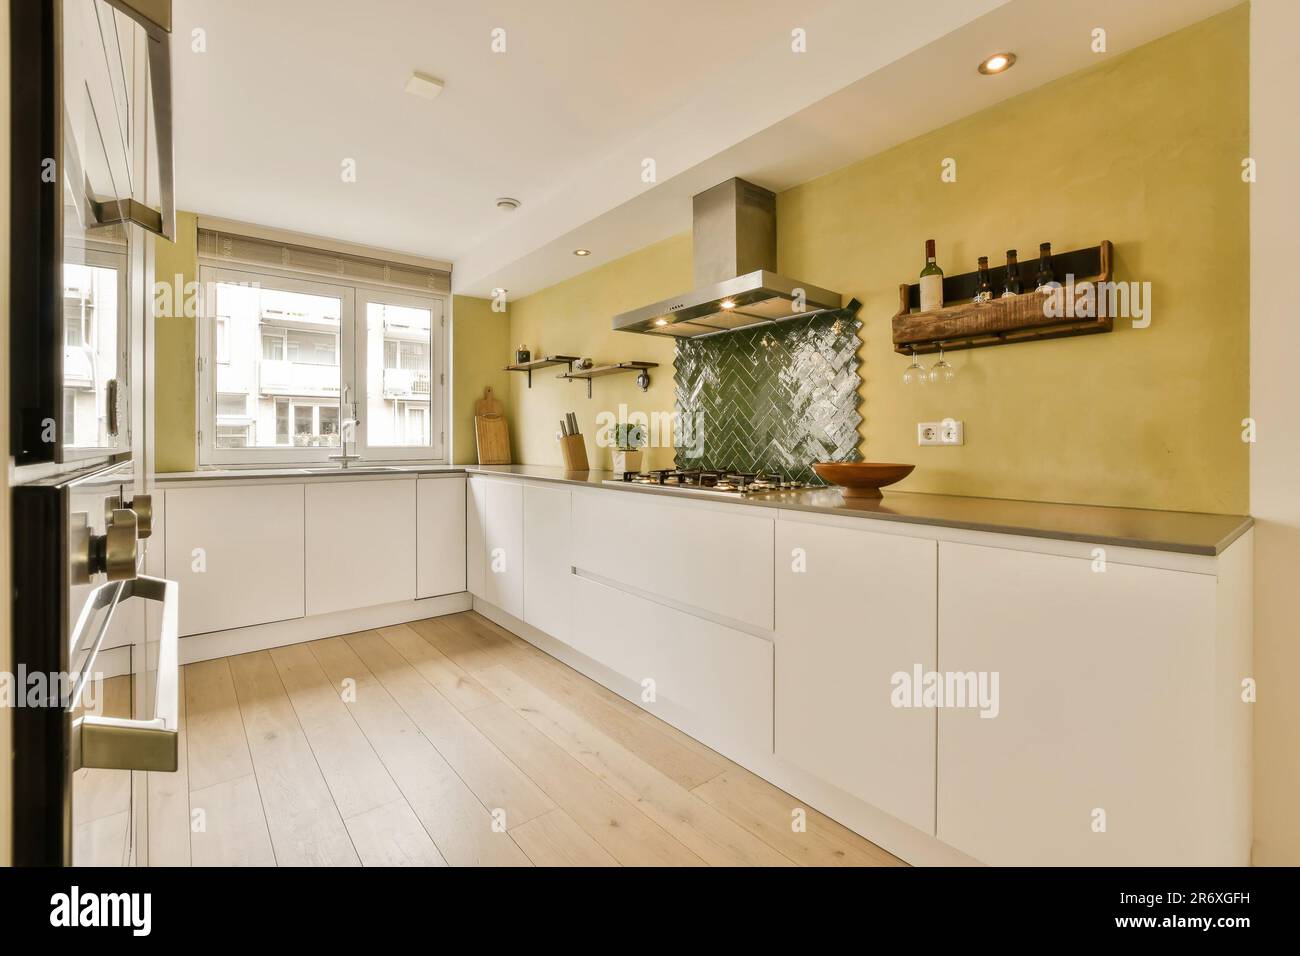 Eine Küche mit gelben Wänden und Holzfußboden in der Mitte des Zimmers, es gibt einen Ofen an der Wand Stockfoto